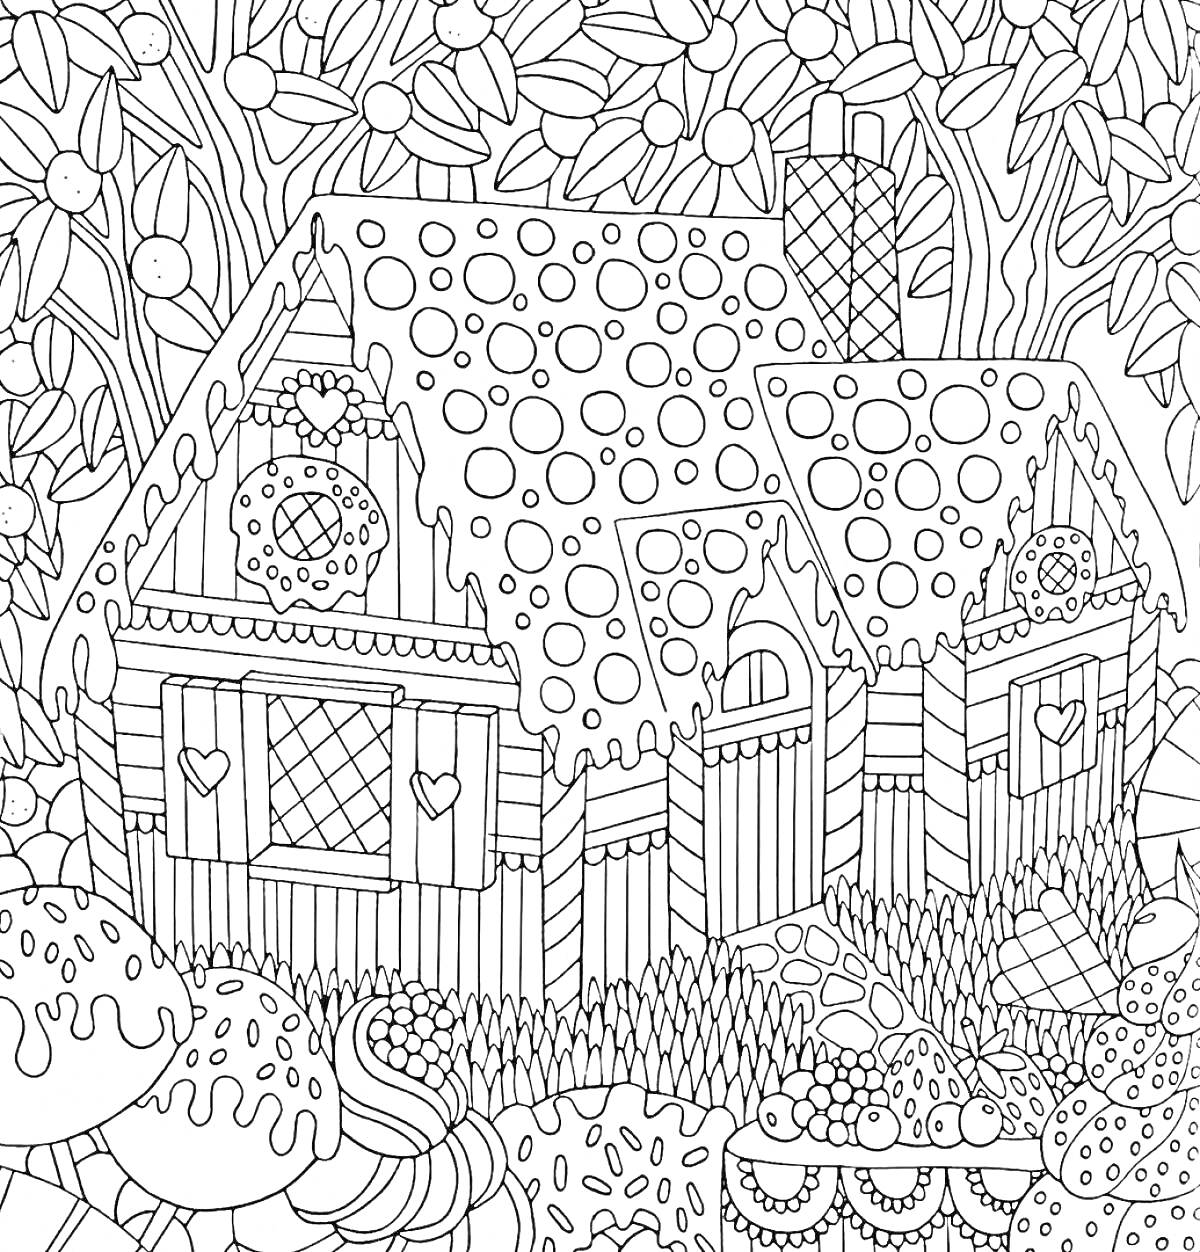 Раскраска Домик в лесу с крышей в кружочек, кустами и деревьями на фоне